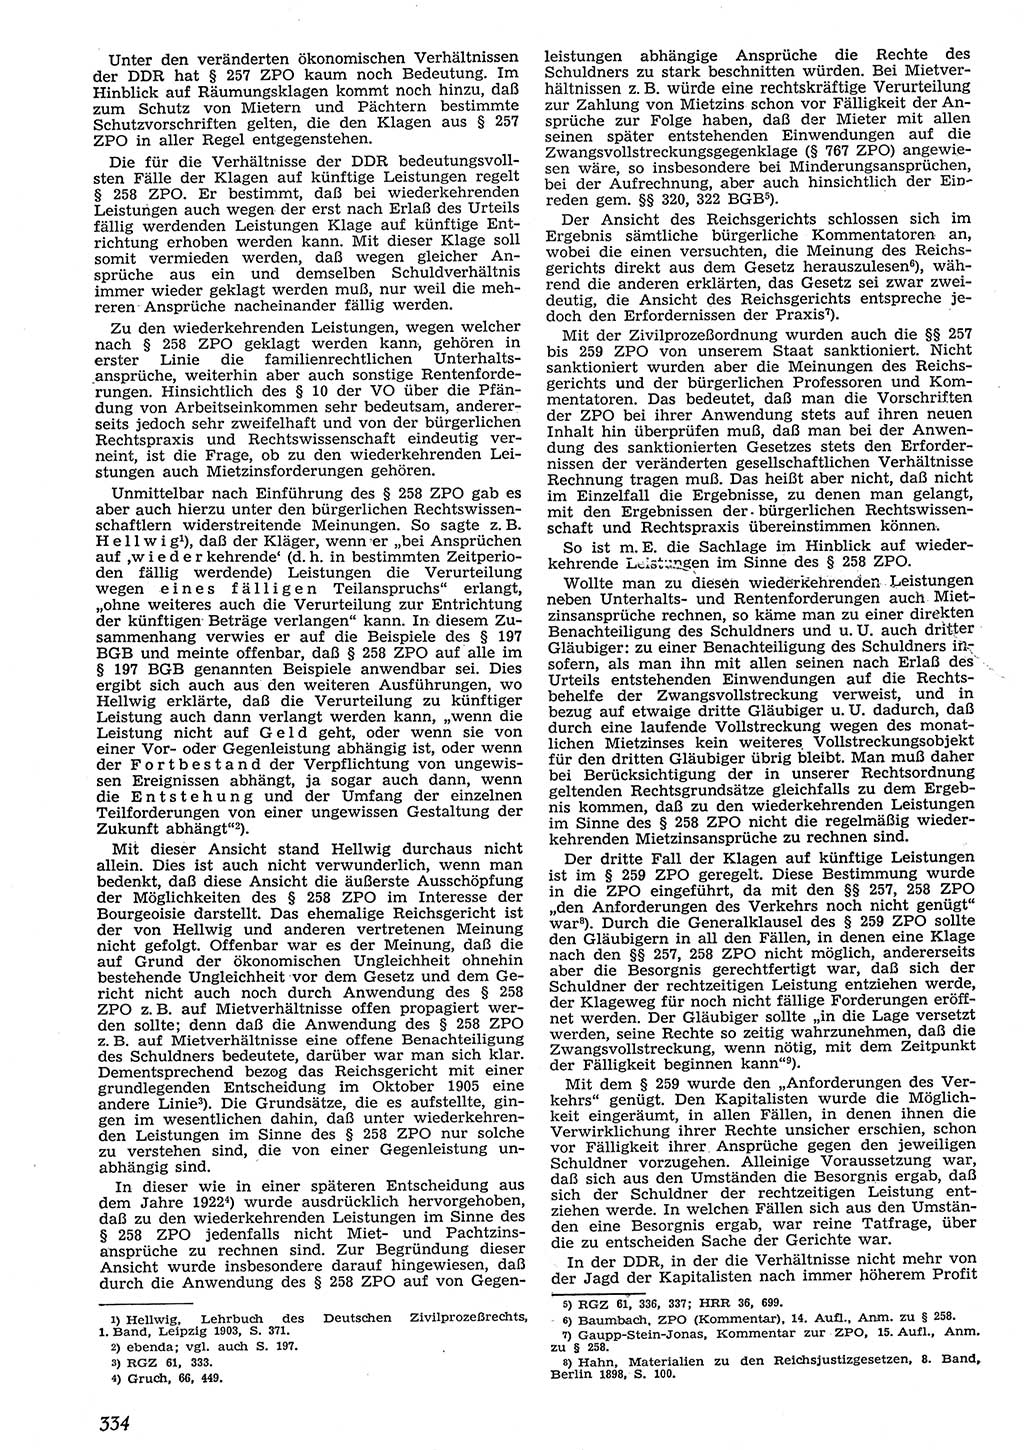 Neue Justiz (NJ), Zeitschrift für Recht und Rechtswissenschaft [Deutsche Demokratische Republik (DDR)], 10. Jahrgang 1956, Seite 334 (NJ DDR 1956, S. 334)